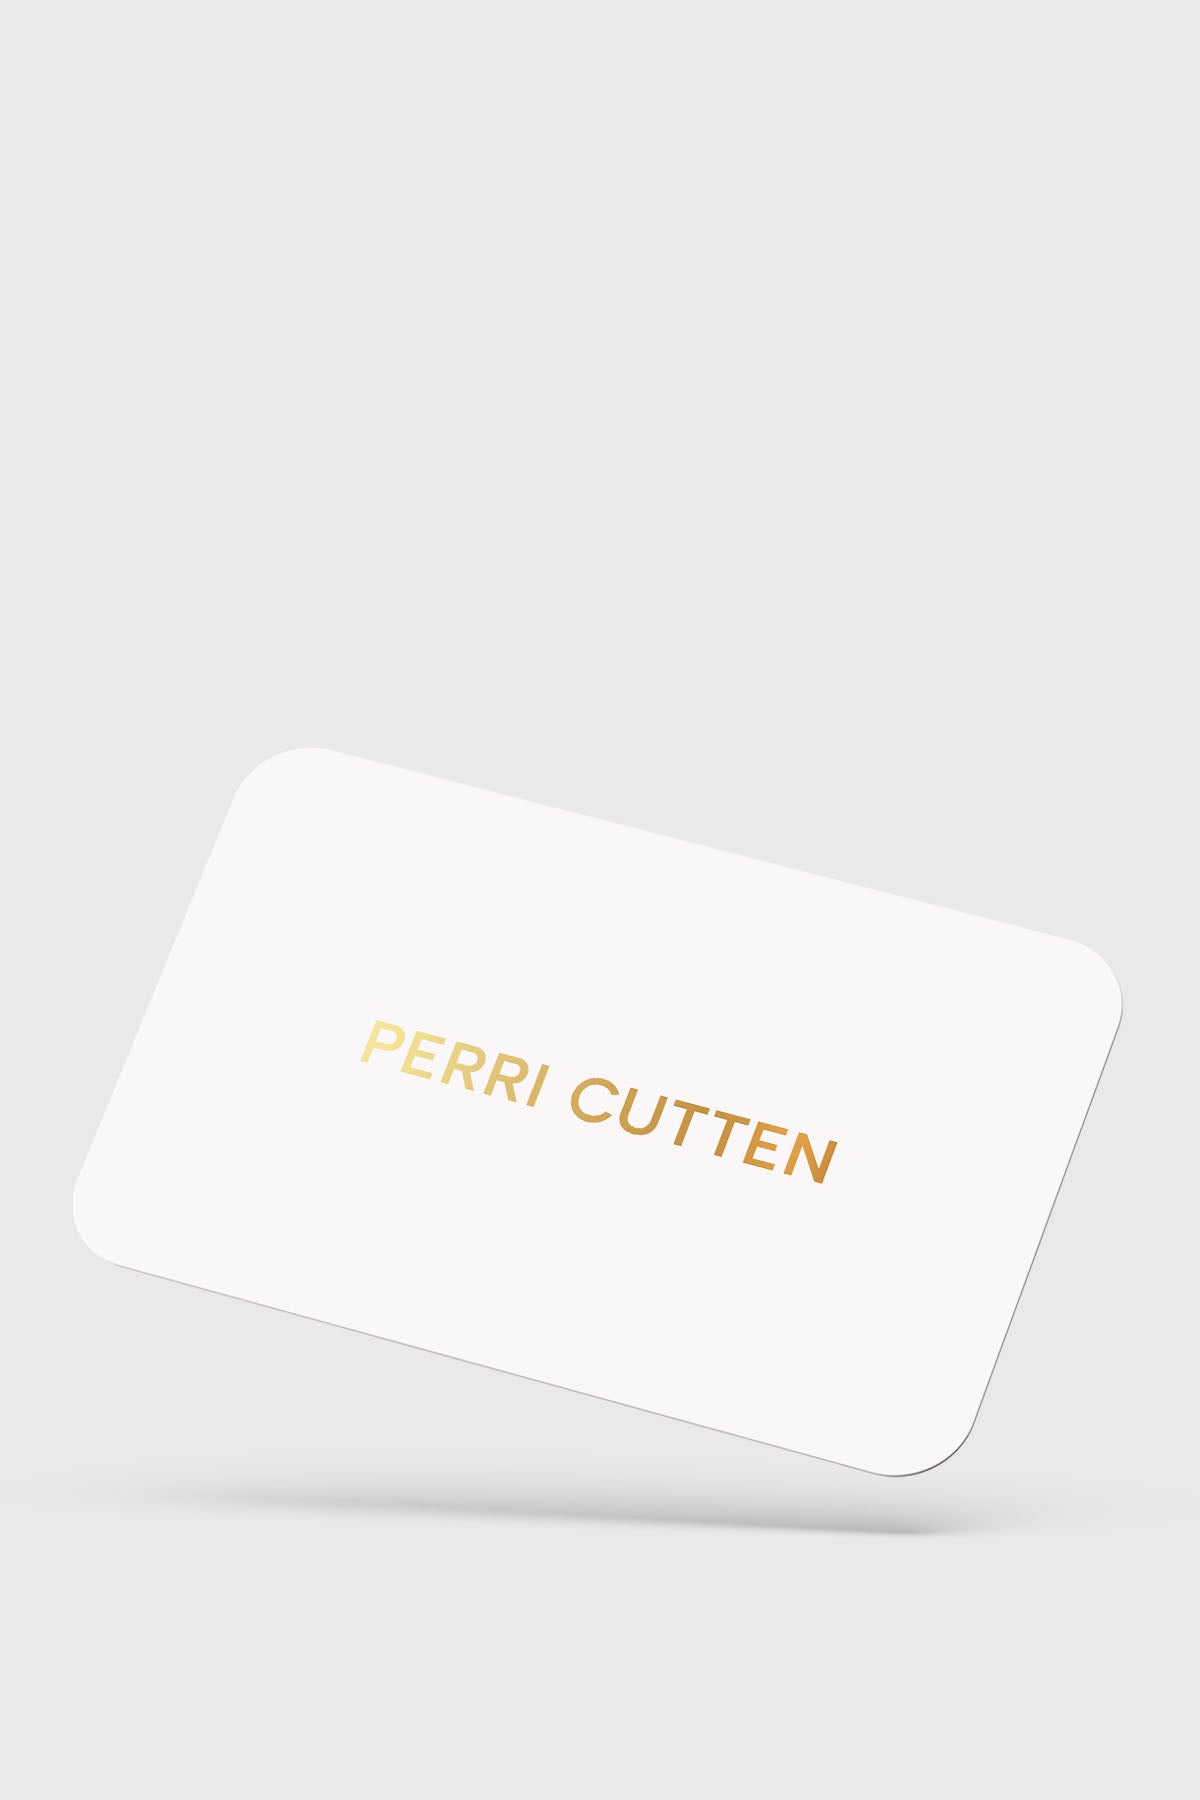 Gift Card-Perri Cutten